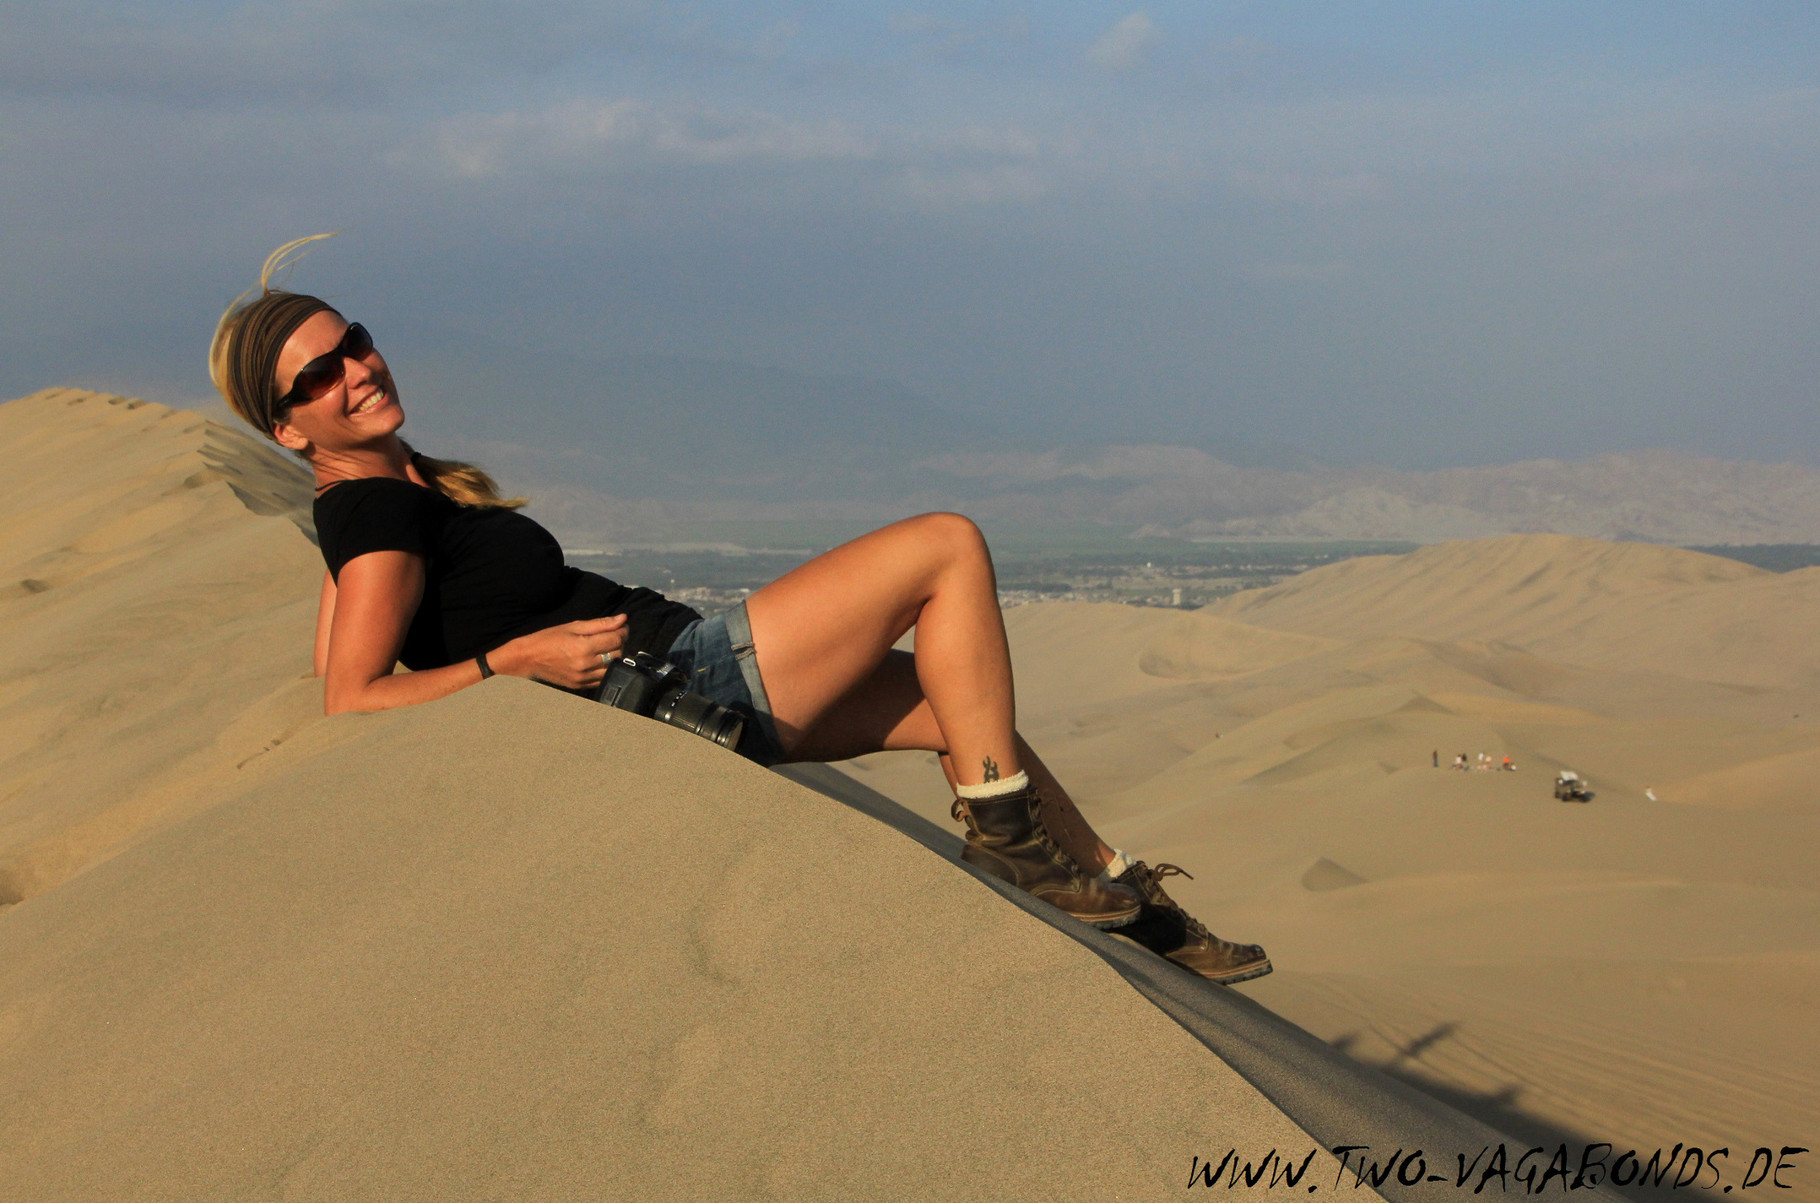 PERU 2015 - IN THE DESERT